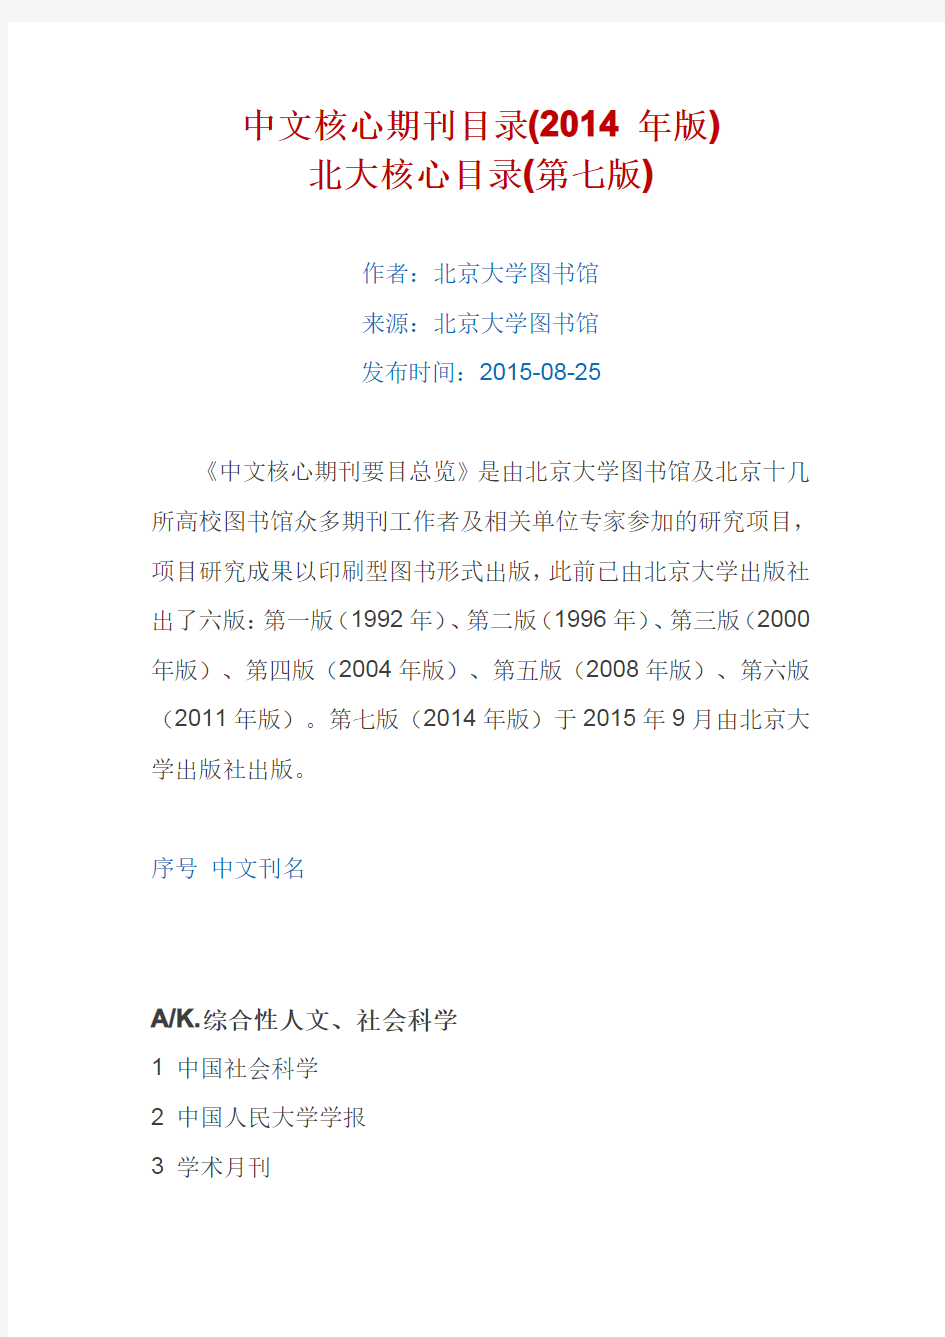 中文核心期刊目录(北京大学图书馆2014年版)